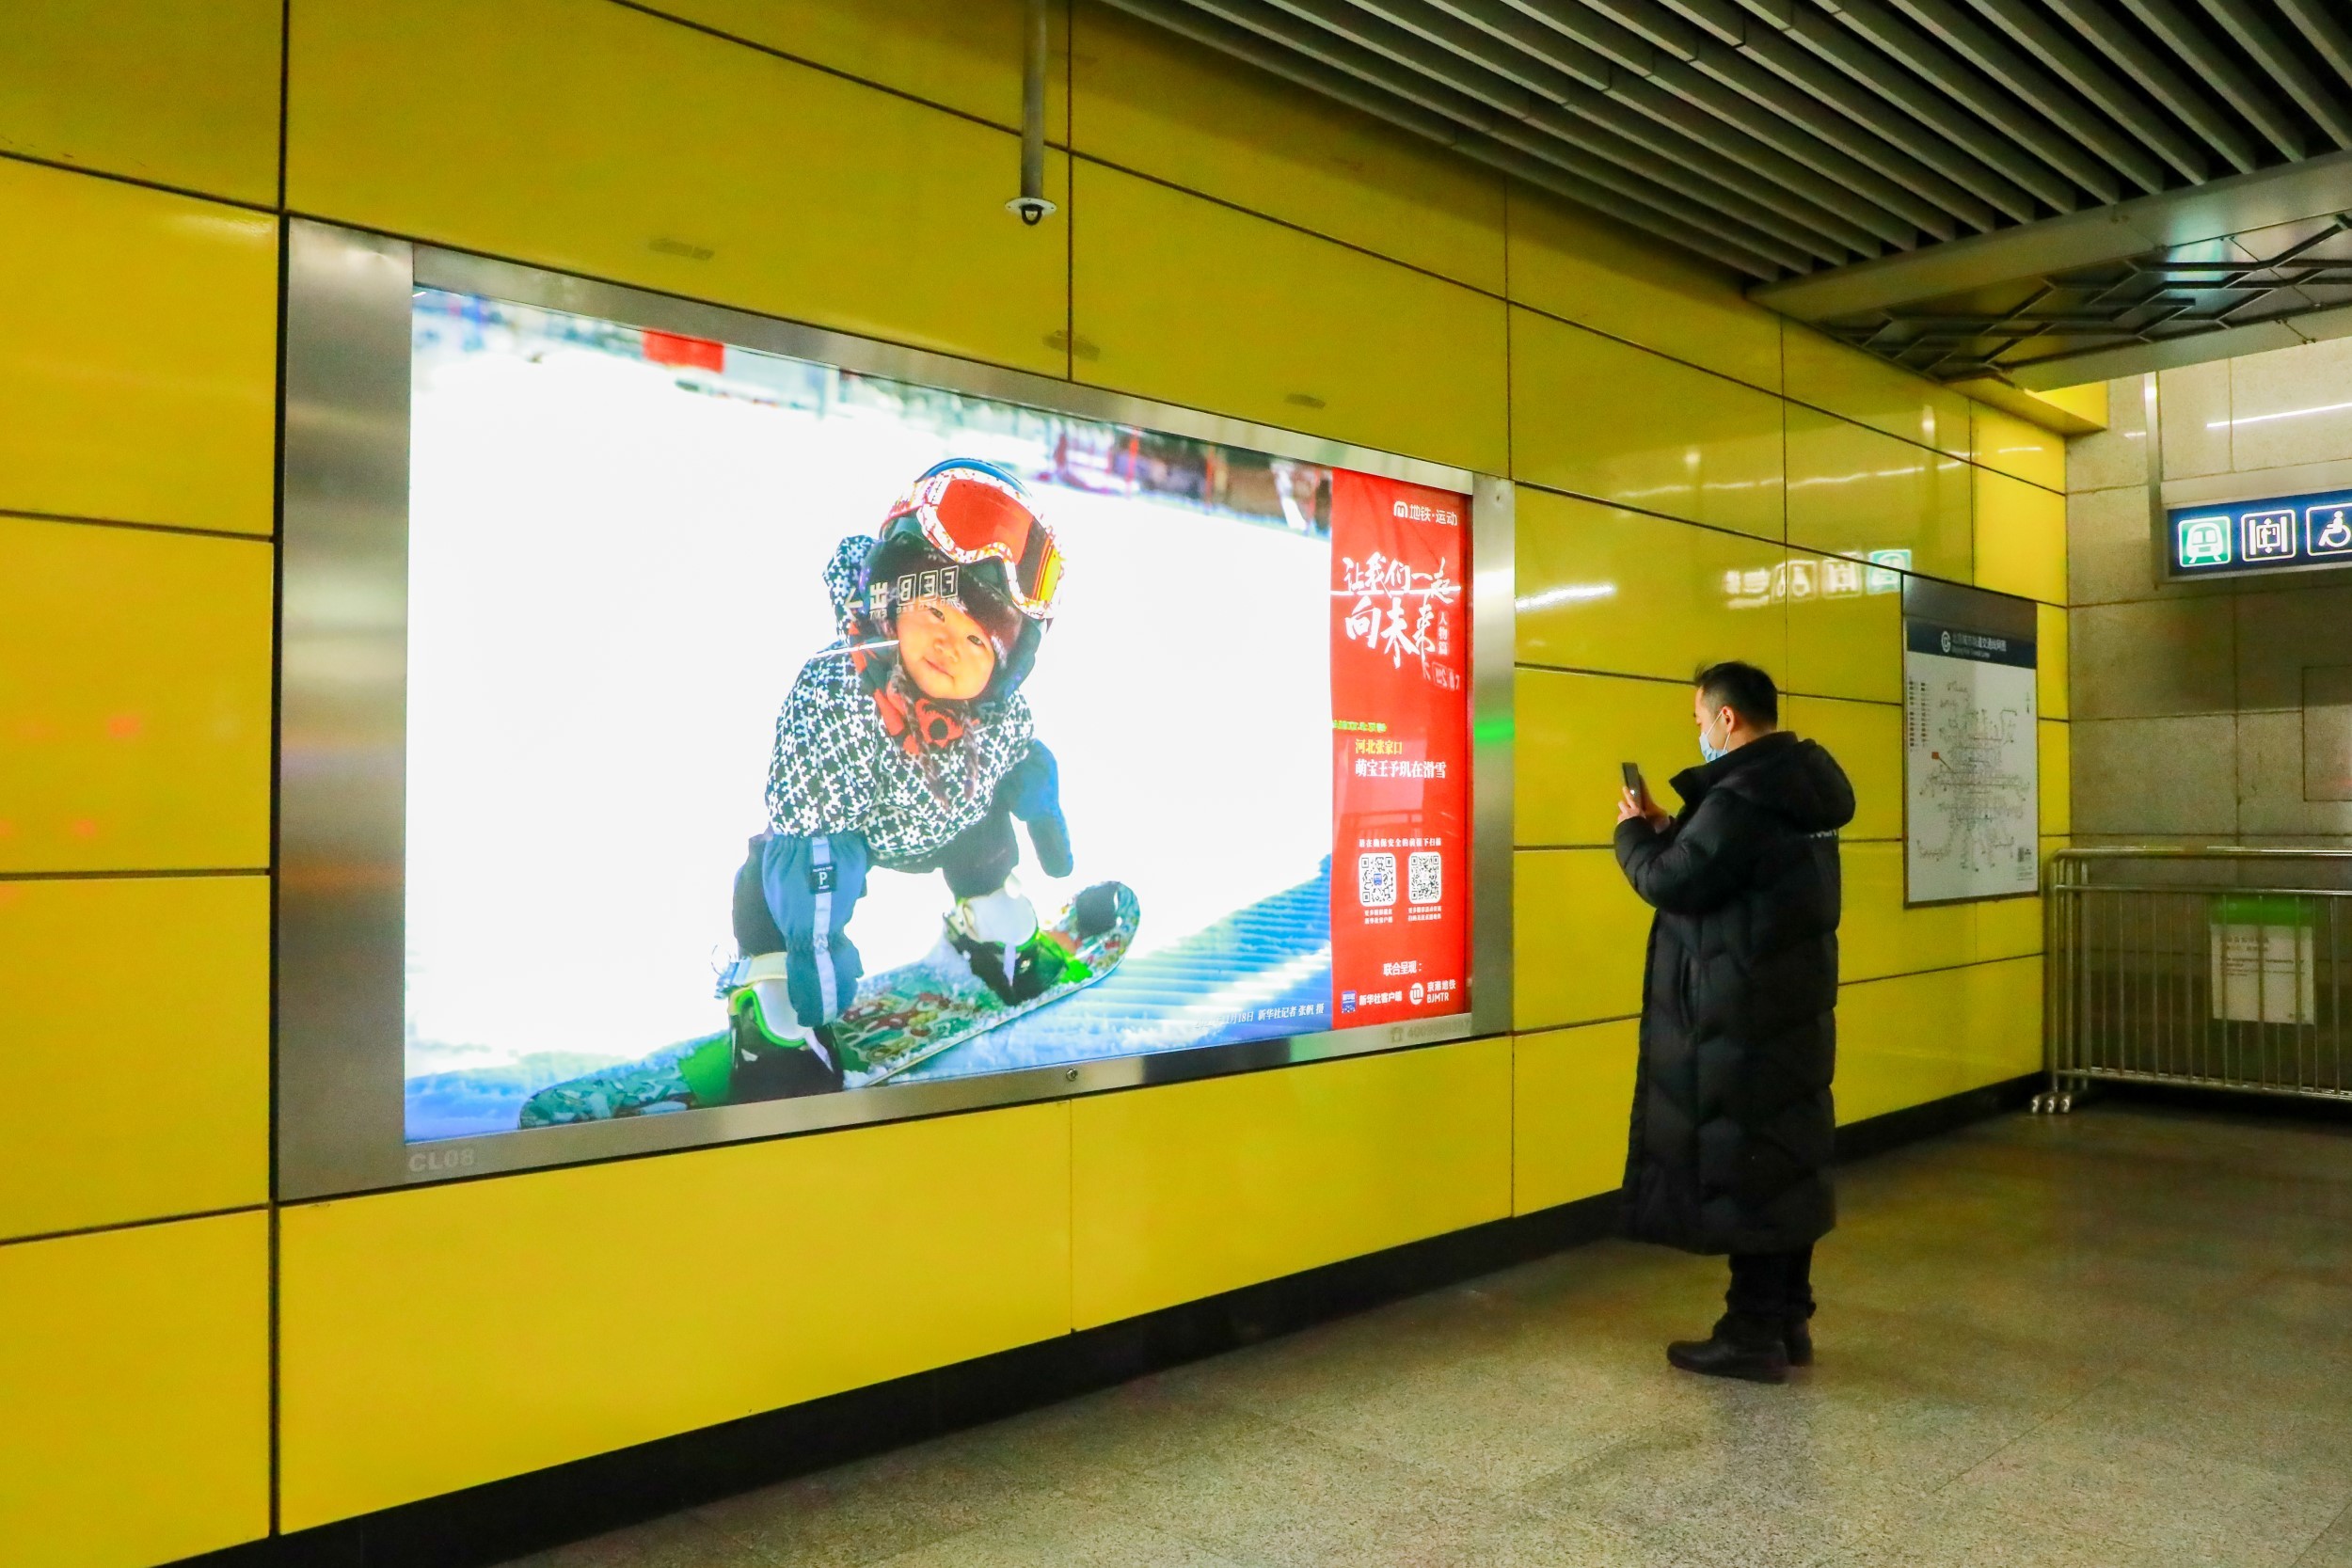 迎春节返程客流 北京京港地铁各线做好各项准备